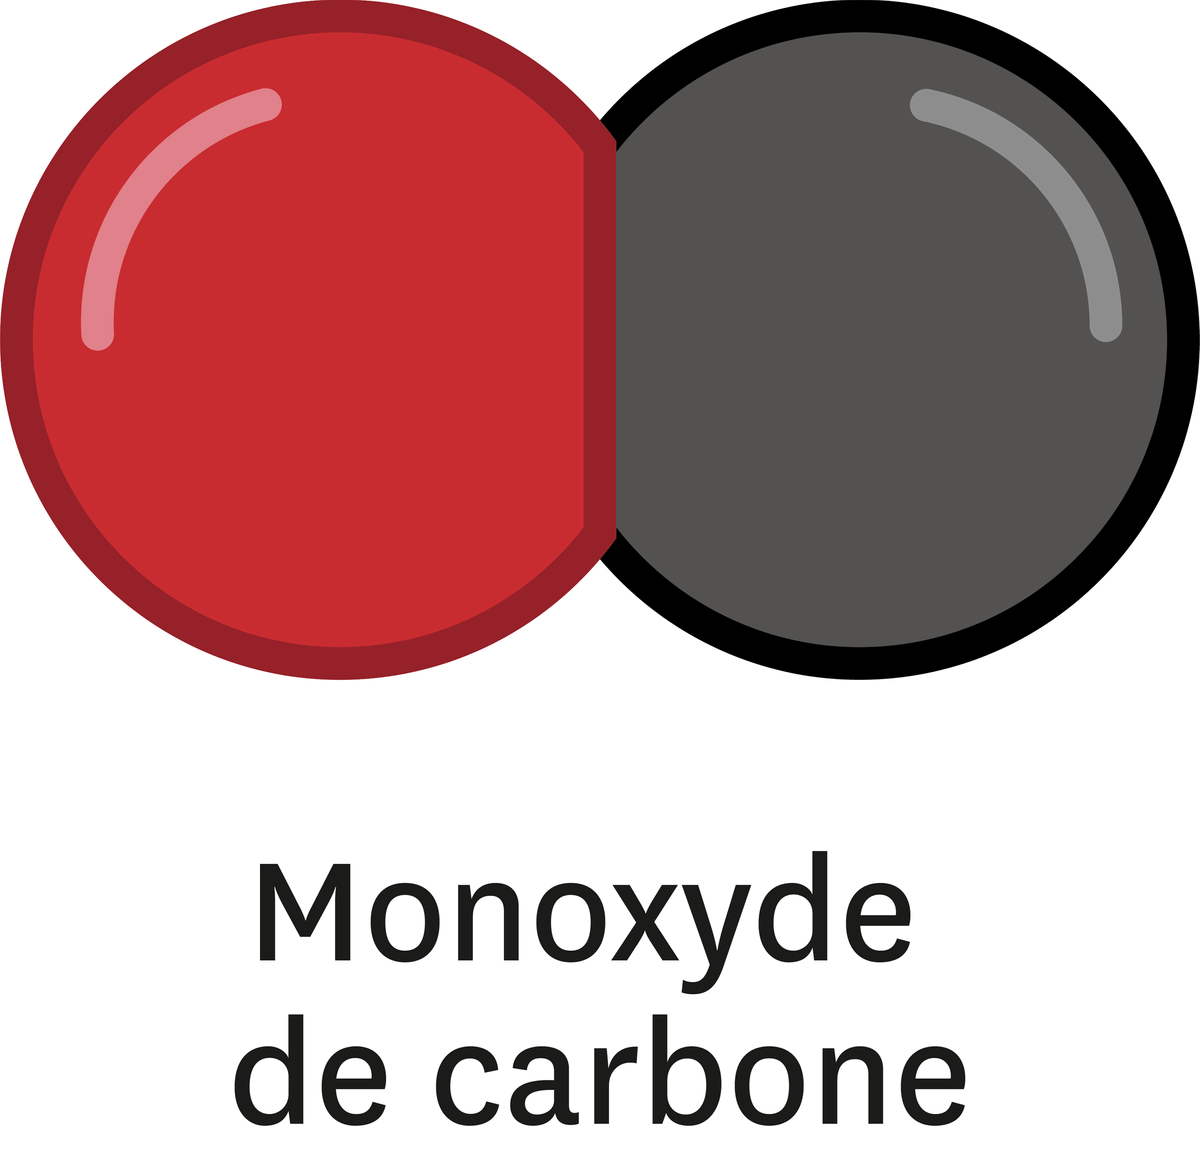 La combustion incomplète du méthane génère du monoxyde de carbone, du dioxyde de carbone et de l'eau.